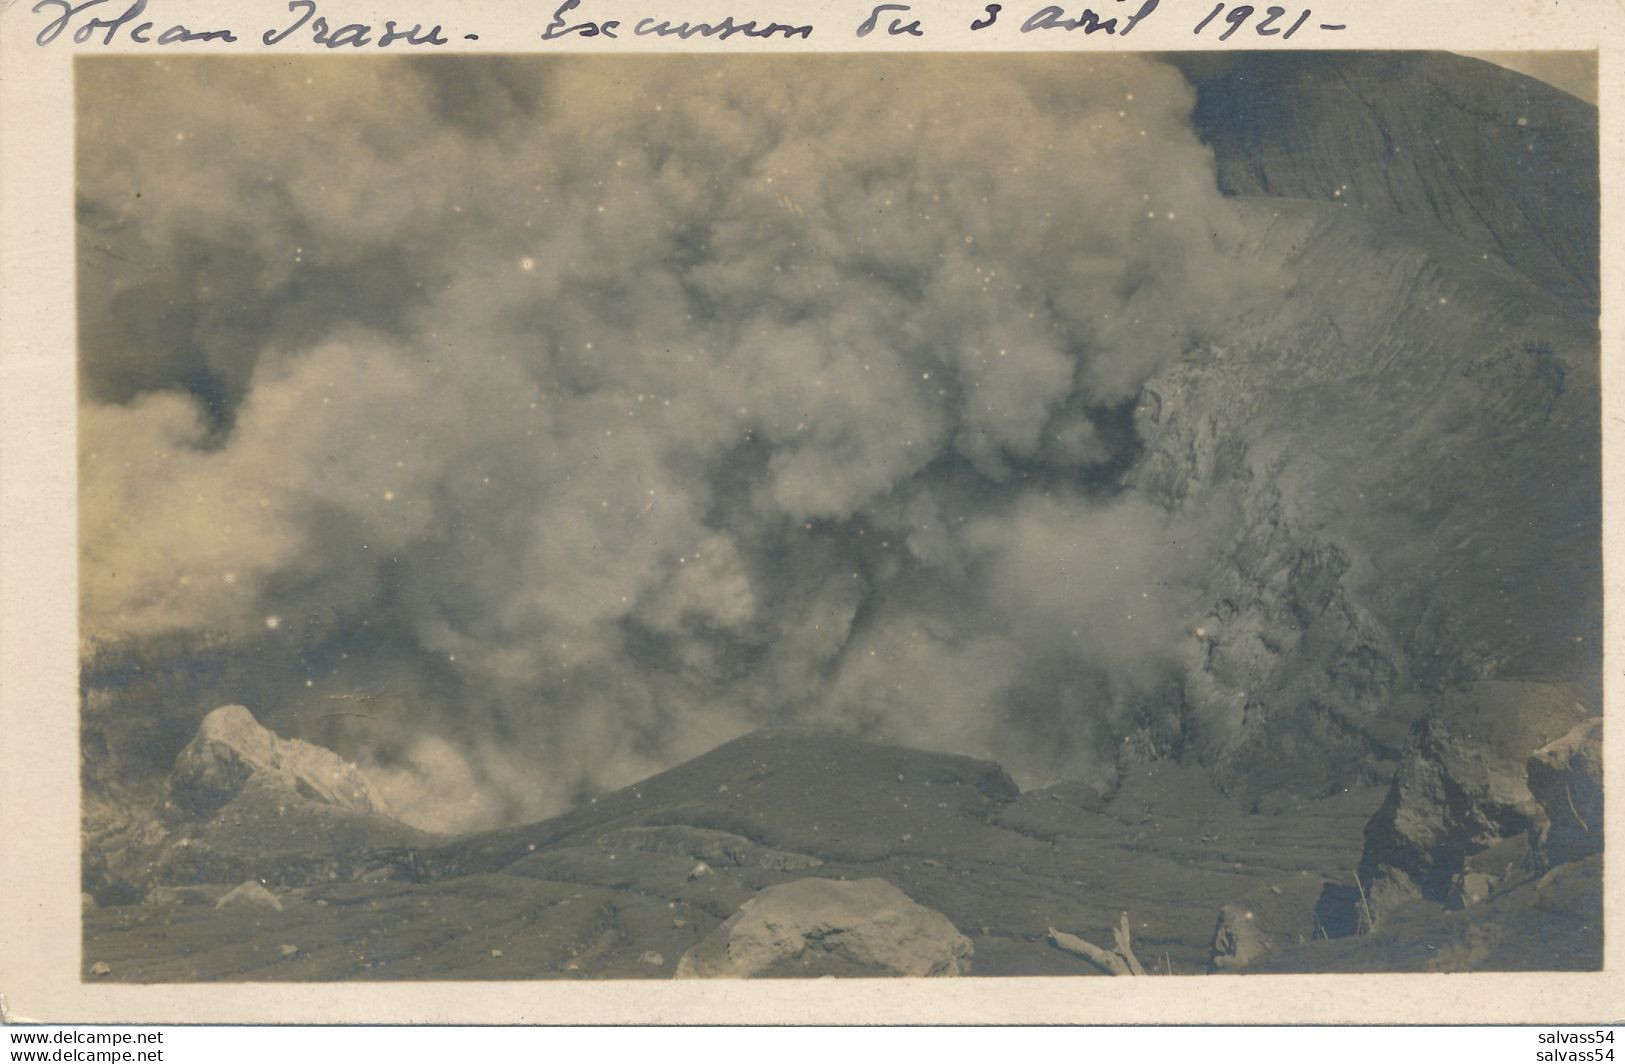 COSTA RICA - Carte-Photo : Volcan IRAZU (3 Avril 1921) - Costa Rica